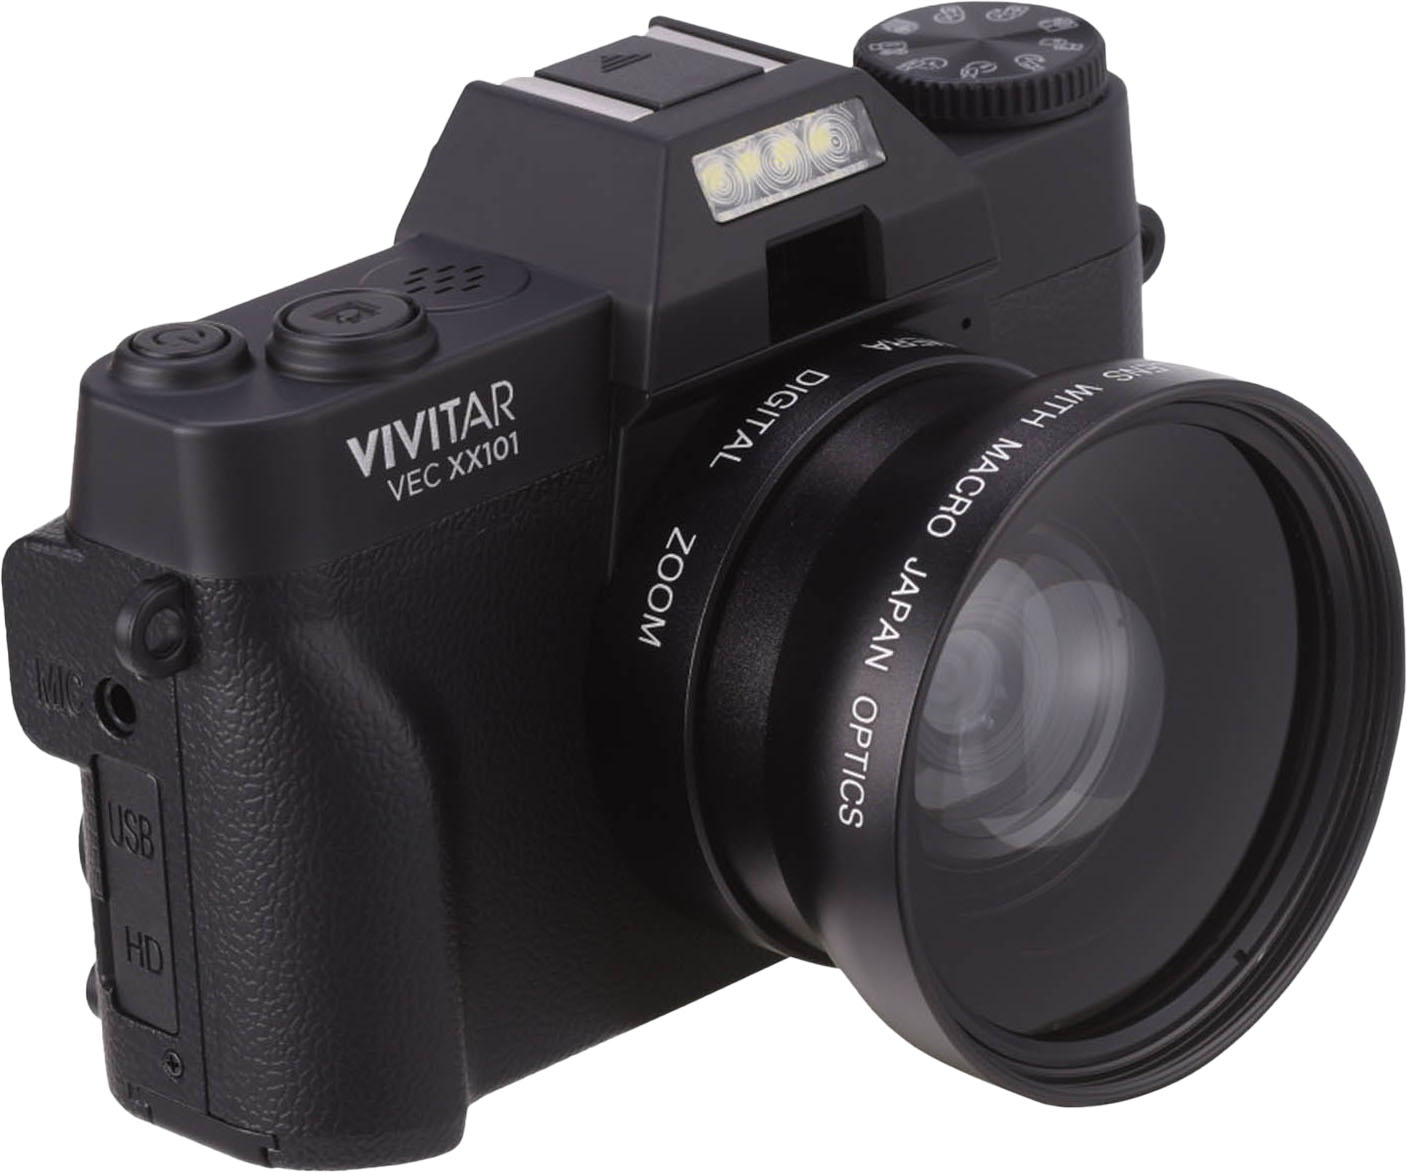 Angle View: Vivitar - VECXX101 4K Digital Camera - Black